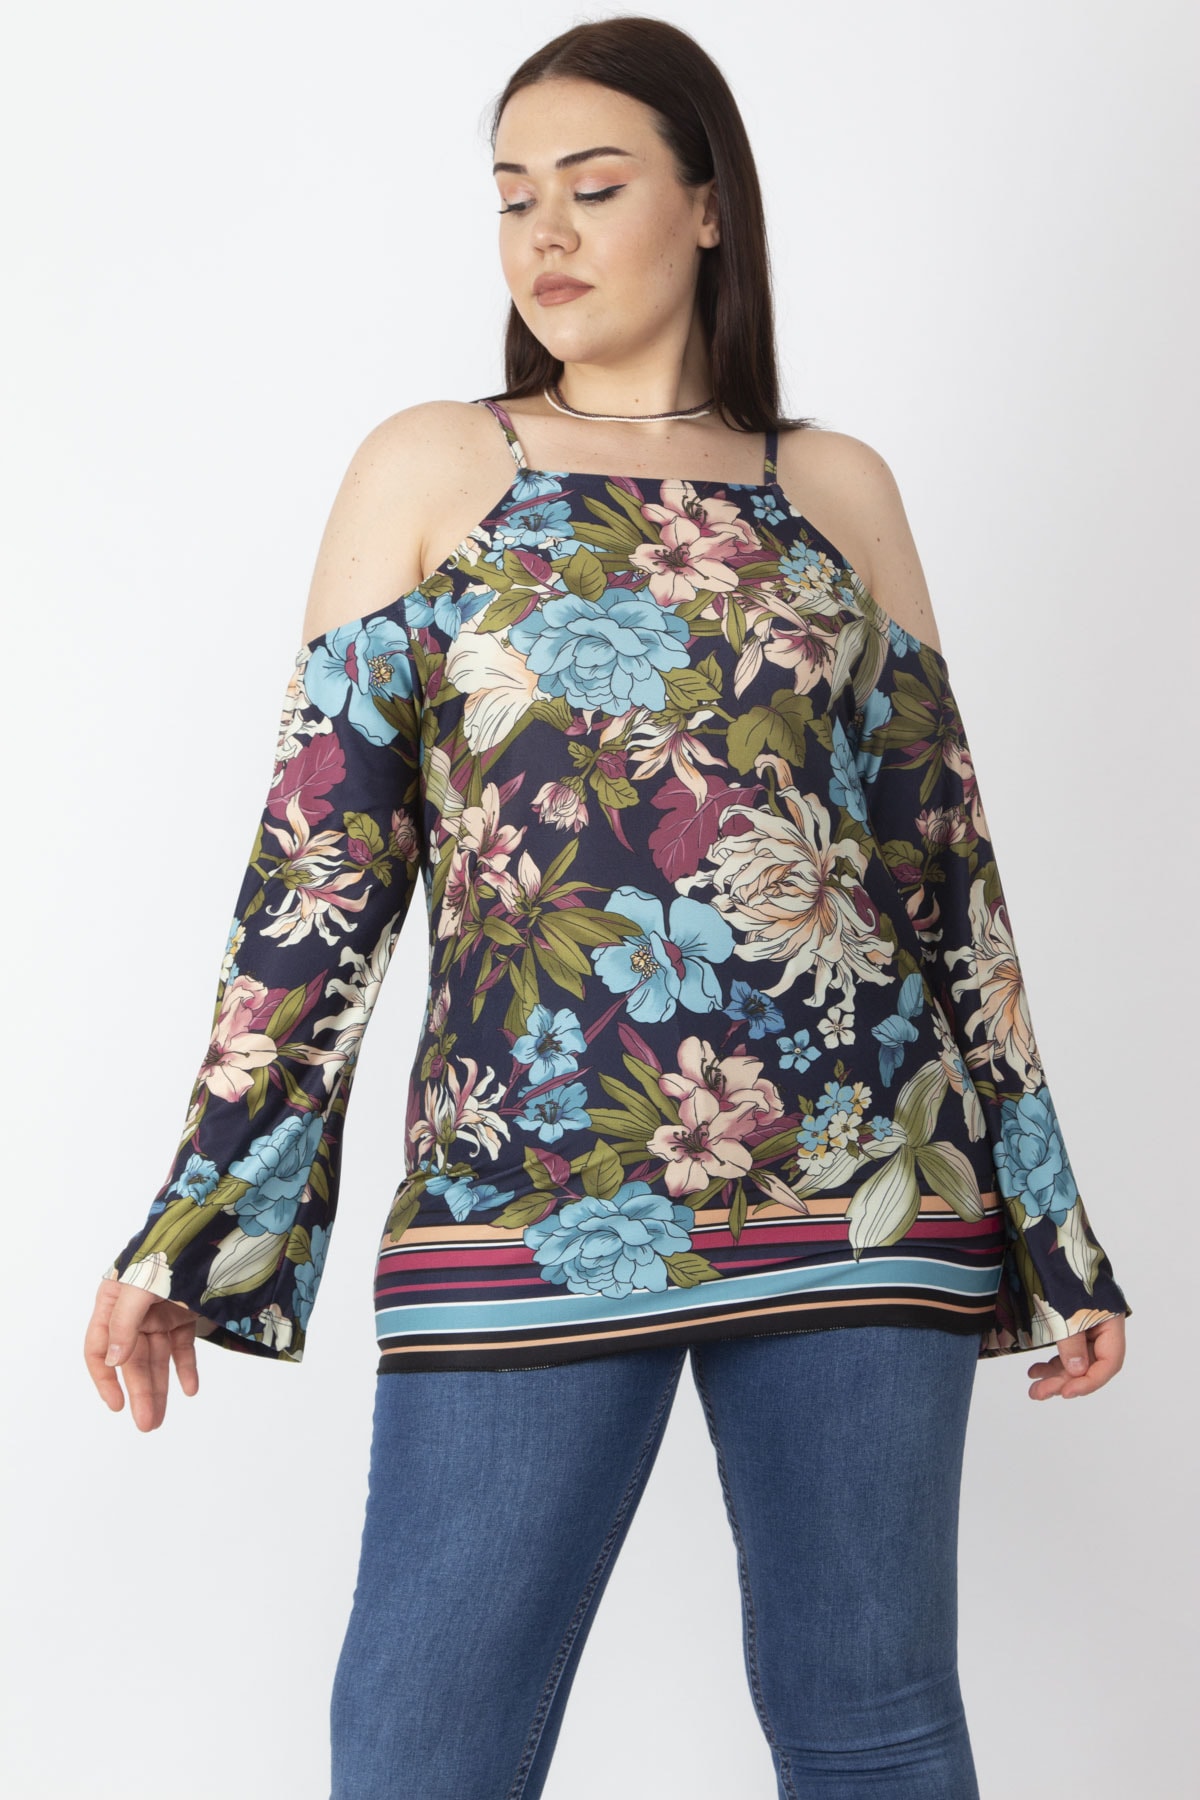 Levně Şans Women's Plus Size Colorful Floral Printed Off-the-Shoulder Blouse